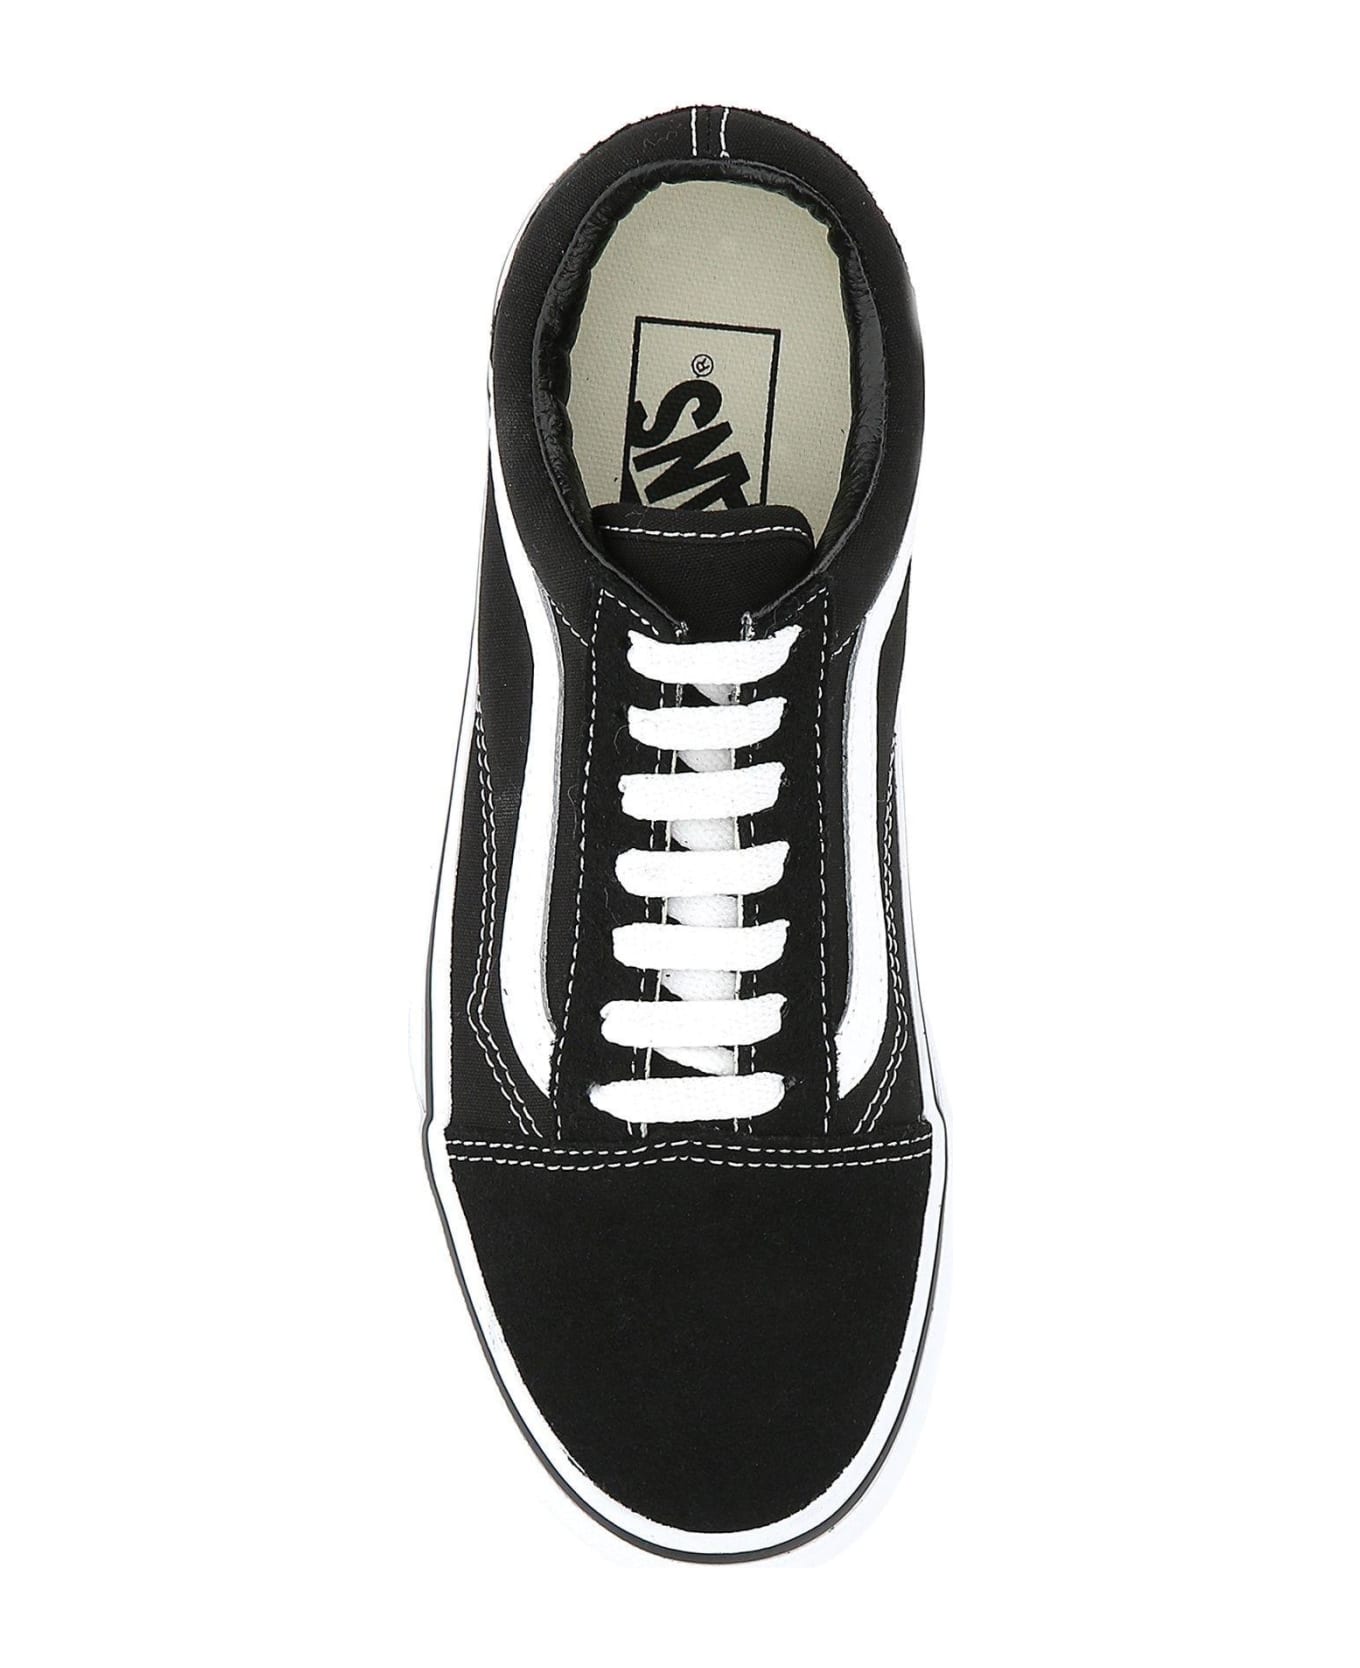 Vans Black Fabric Old Skool Platform Sneakers